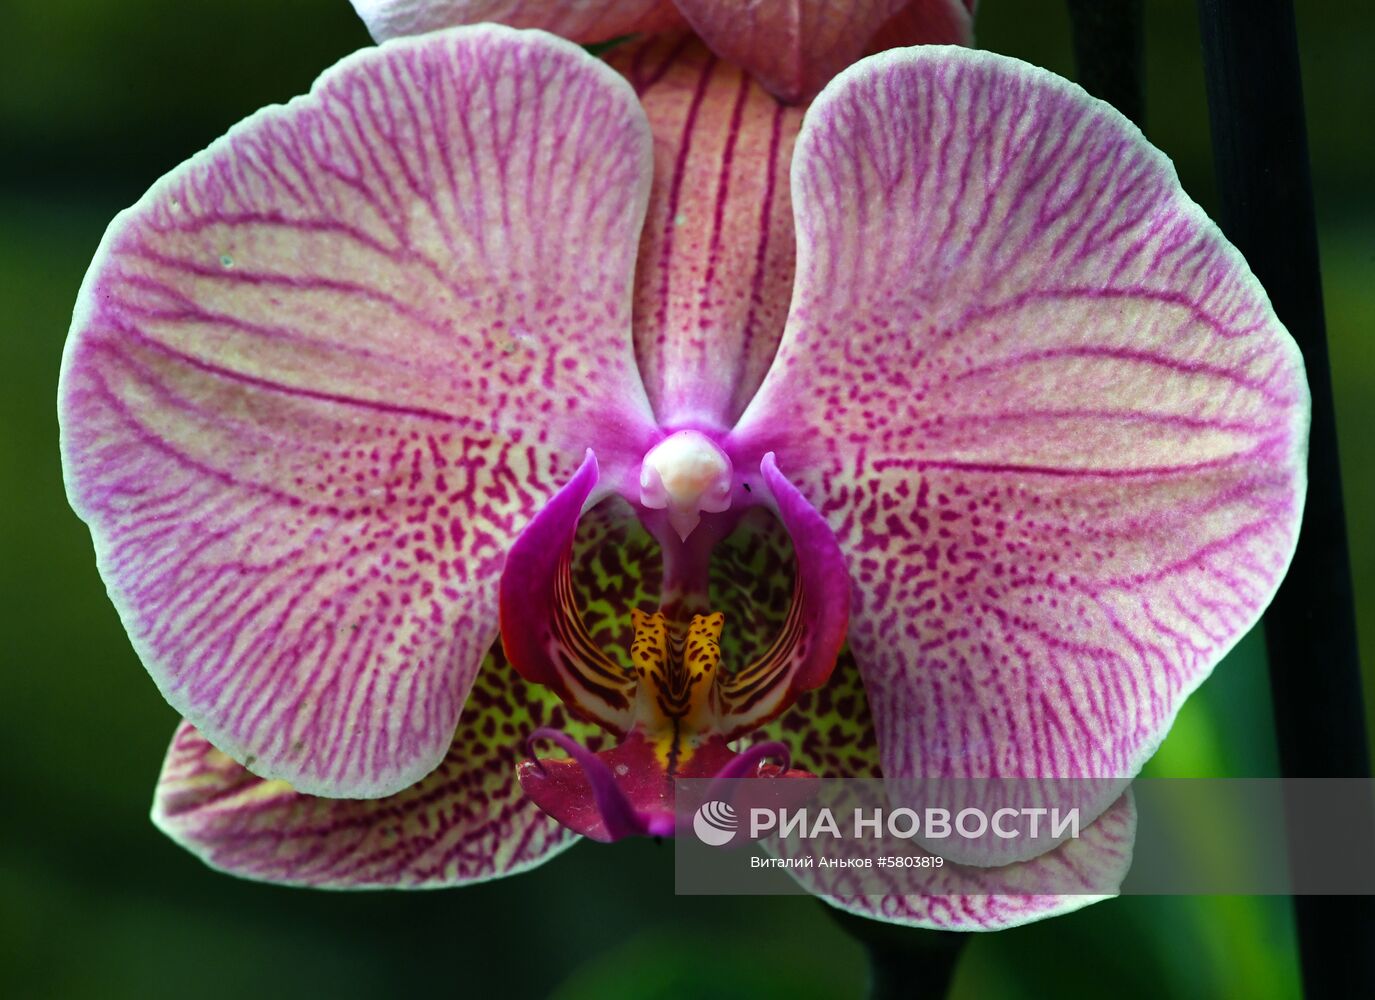 Выставка тропических орхидей в оранжерее Ботанического сада